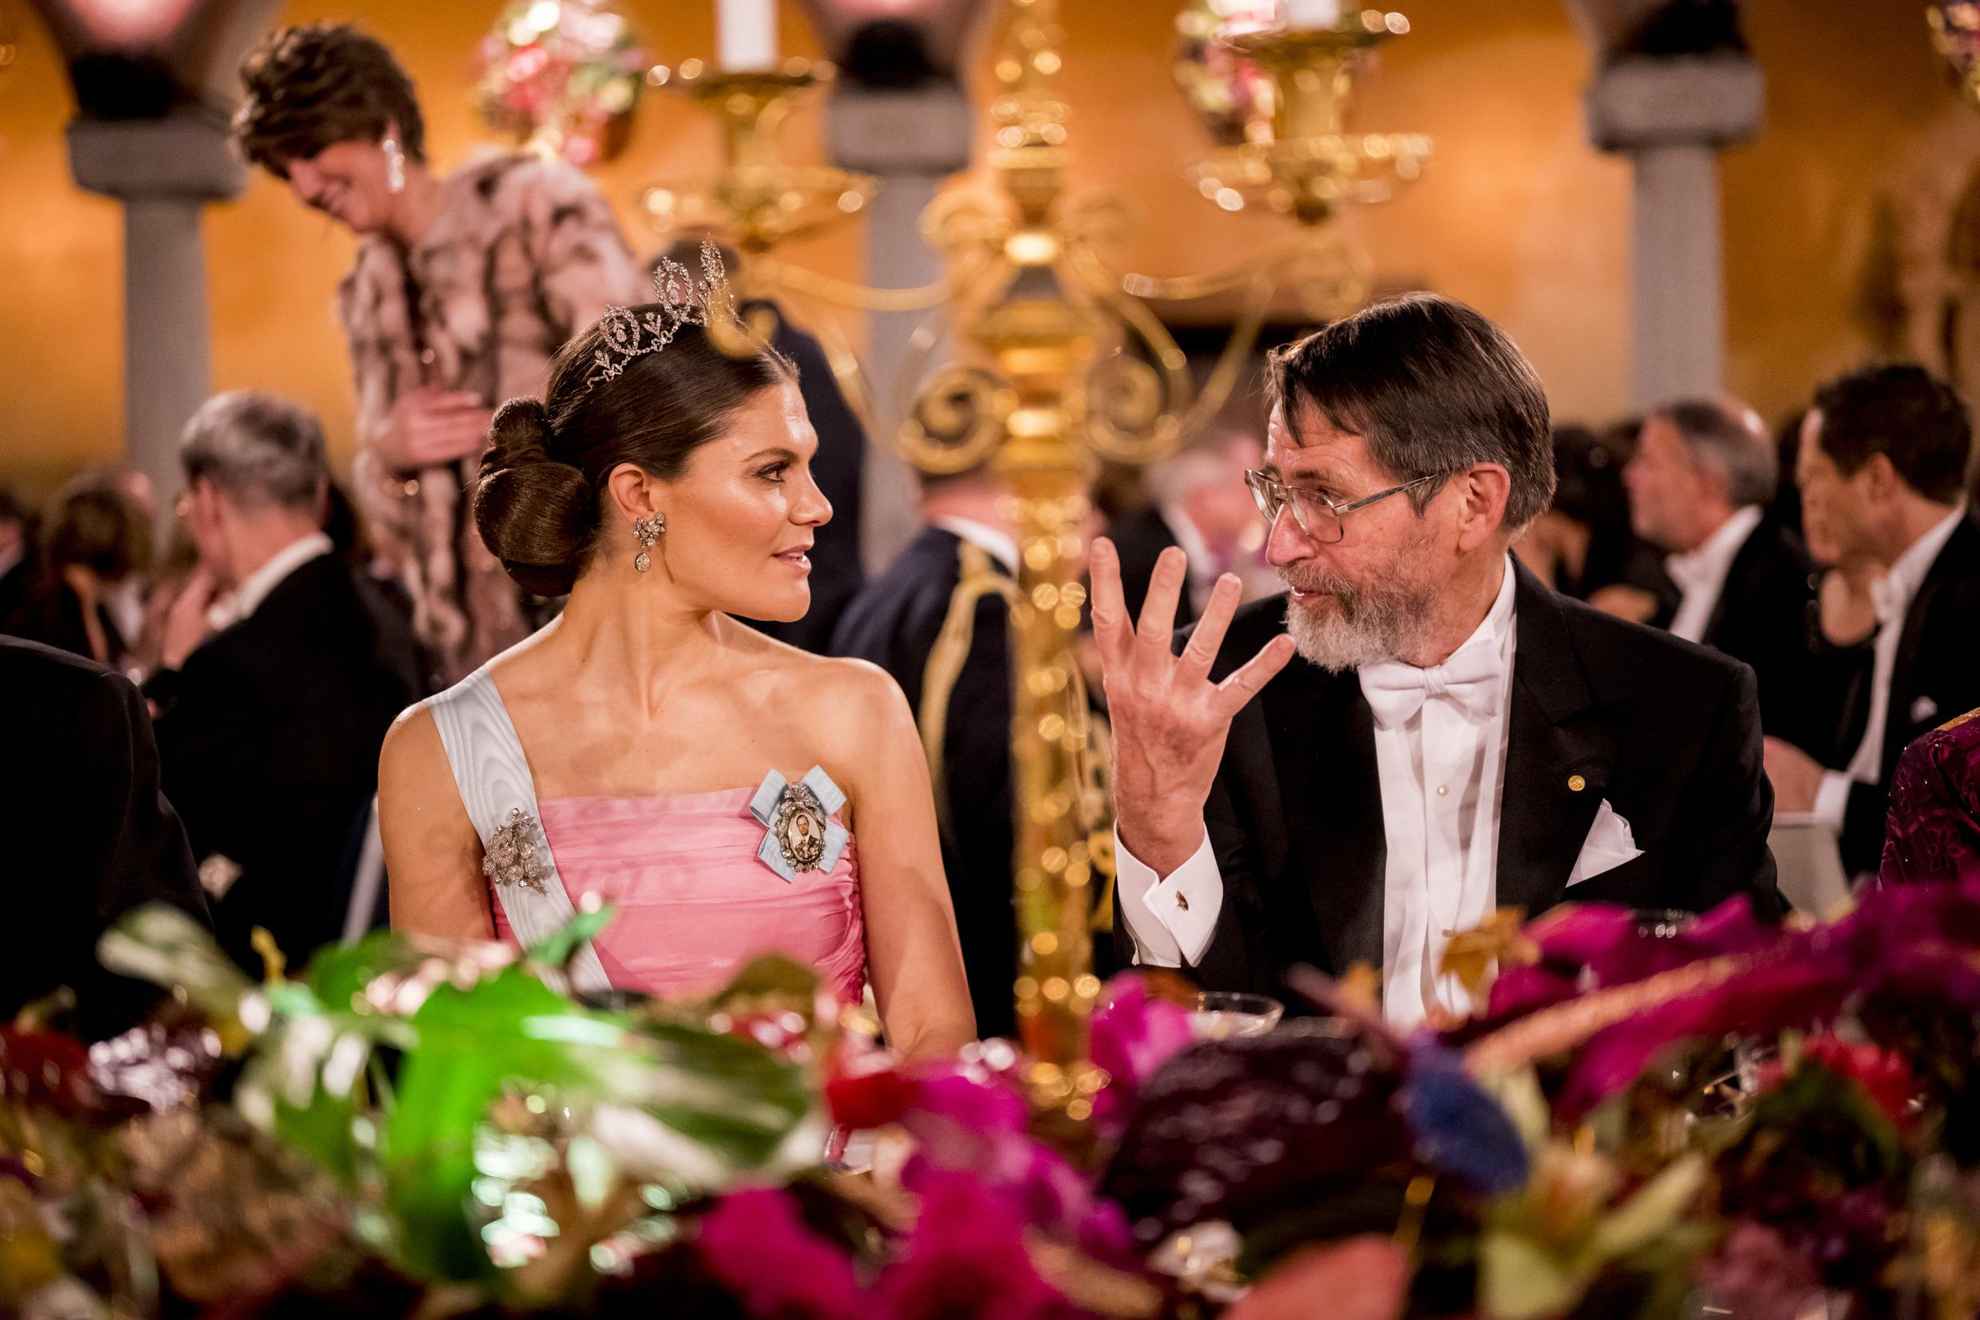 Kronprinzessin Victoria führt während des Nobelbanketts ein Gespräch mit dem Mann, der neben ihr sitzt.